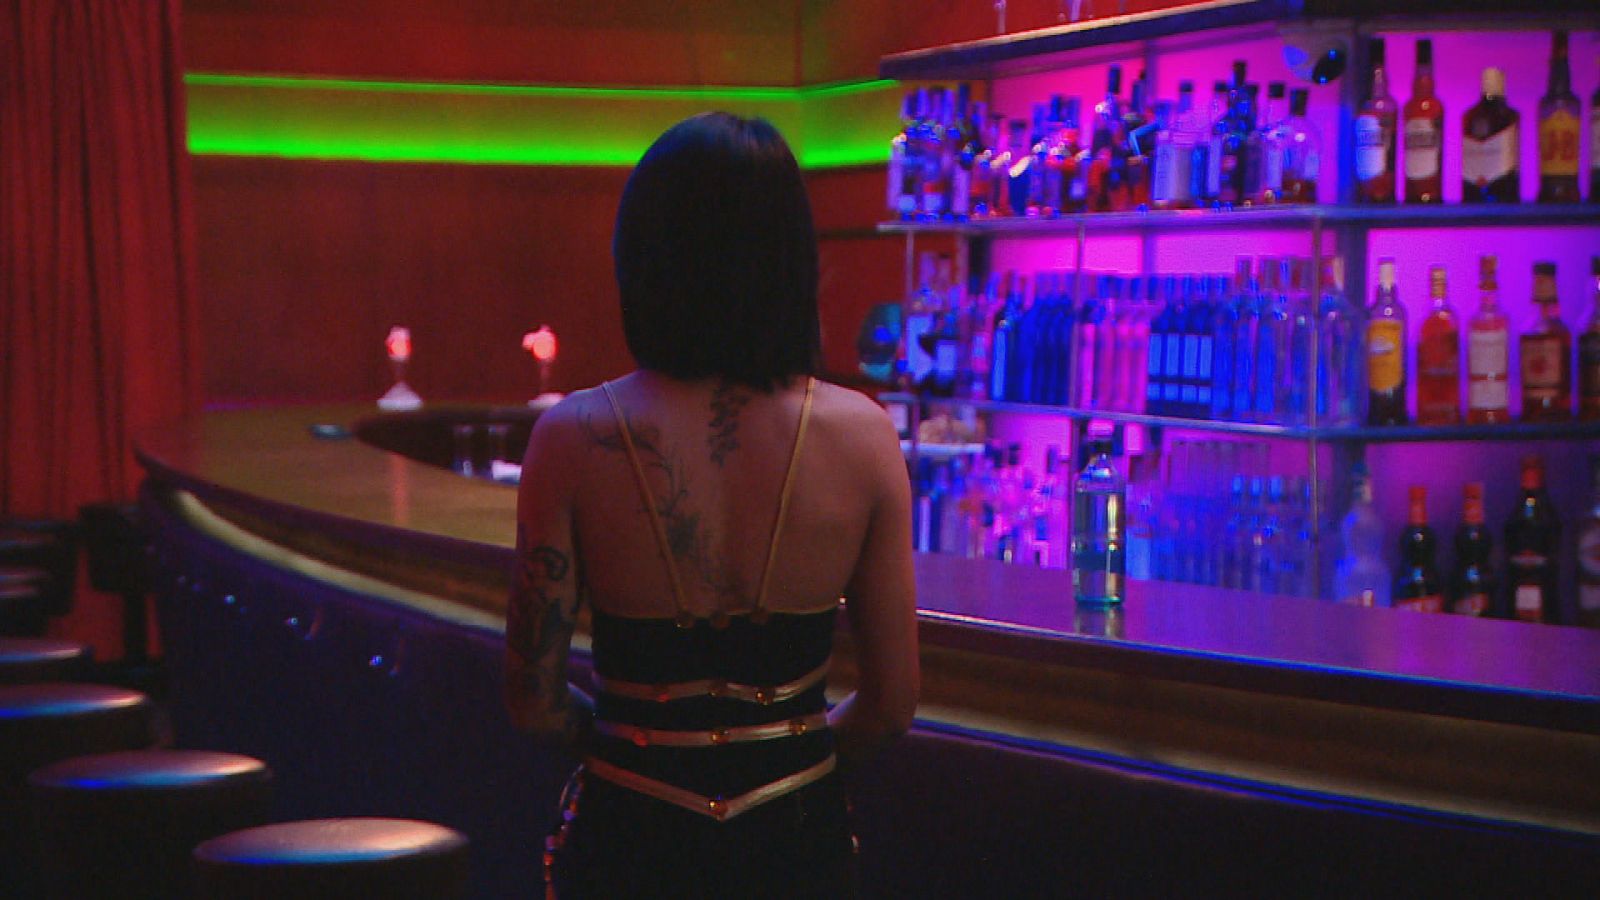 En portada - Prostituciones - Documental en RTVE